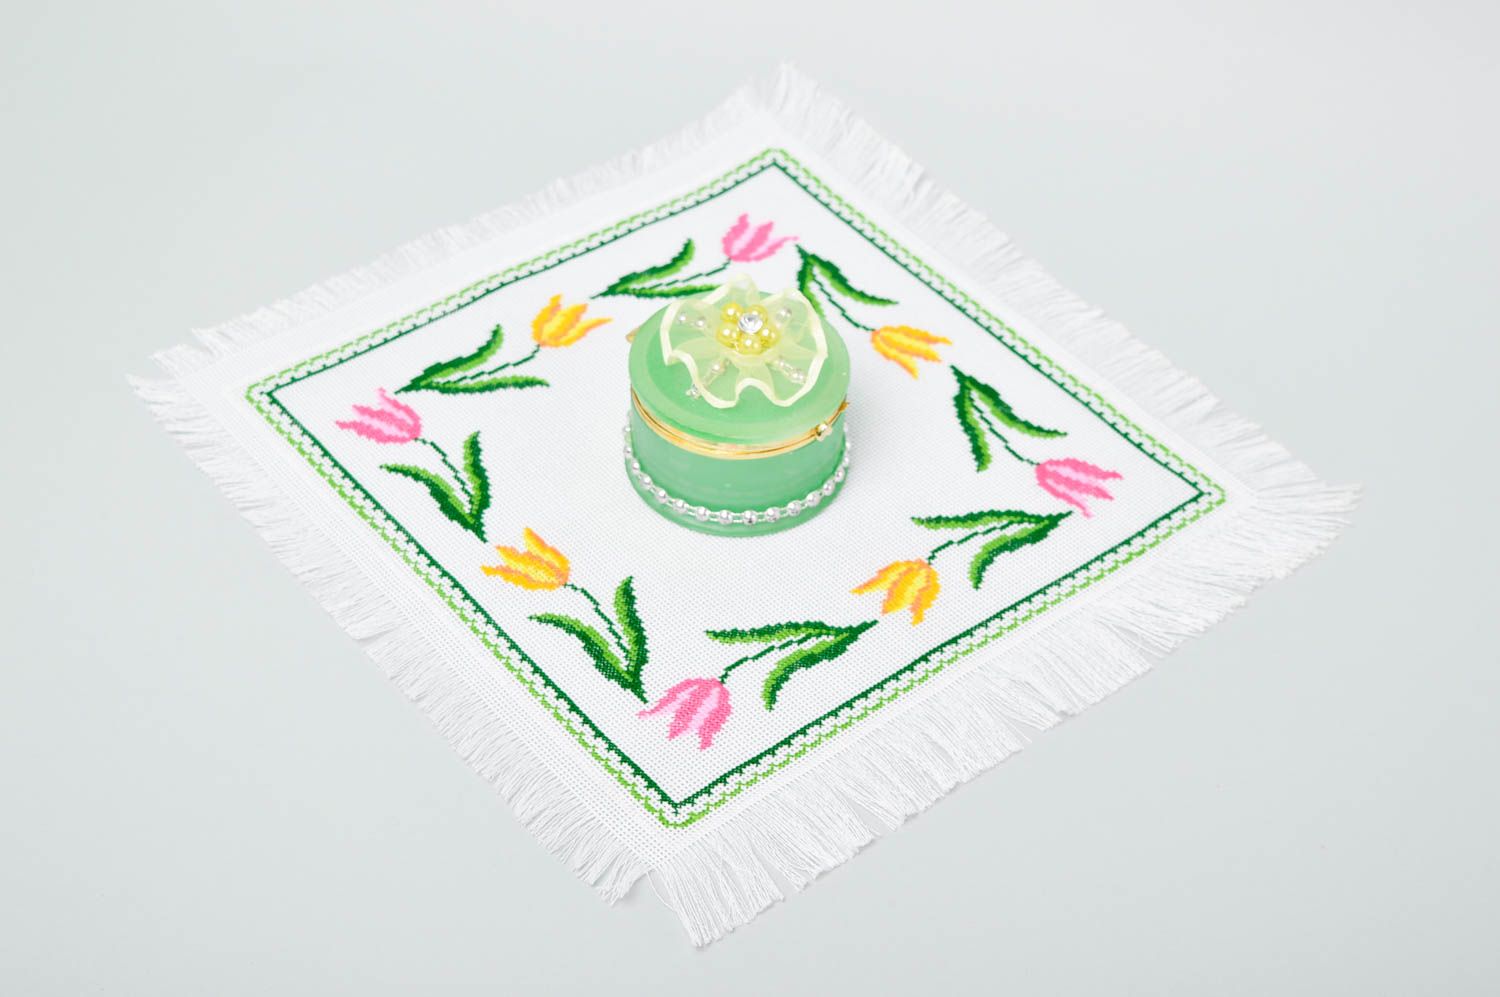 Servilleta bordada hecha a mano textil para el hogar decoración de mesa foto 1